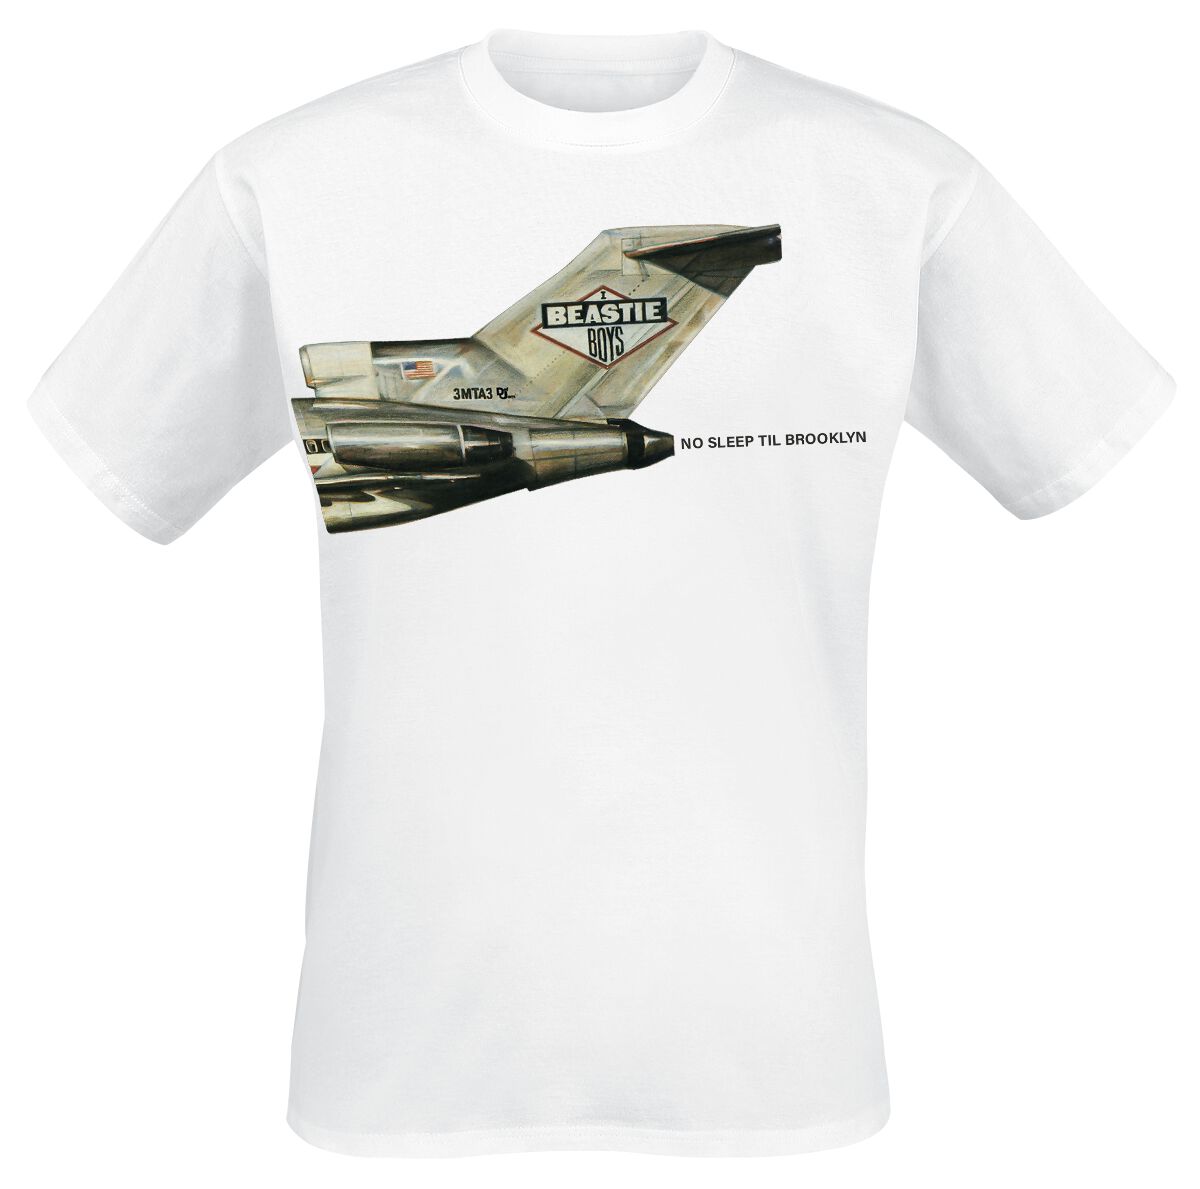 Beastie Boys T-Shirt - No Sleep Til Brooklyn Plane - S bis 3XL - für Männer - Größe XXL - weiß  - Lizenziertes Merchandise!